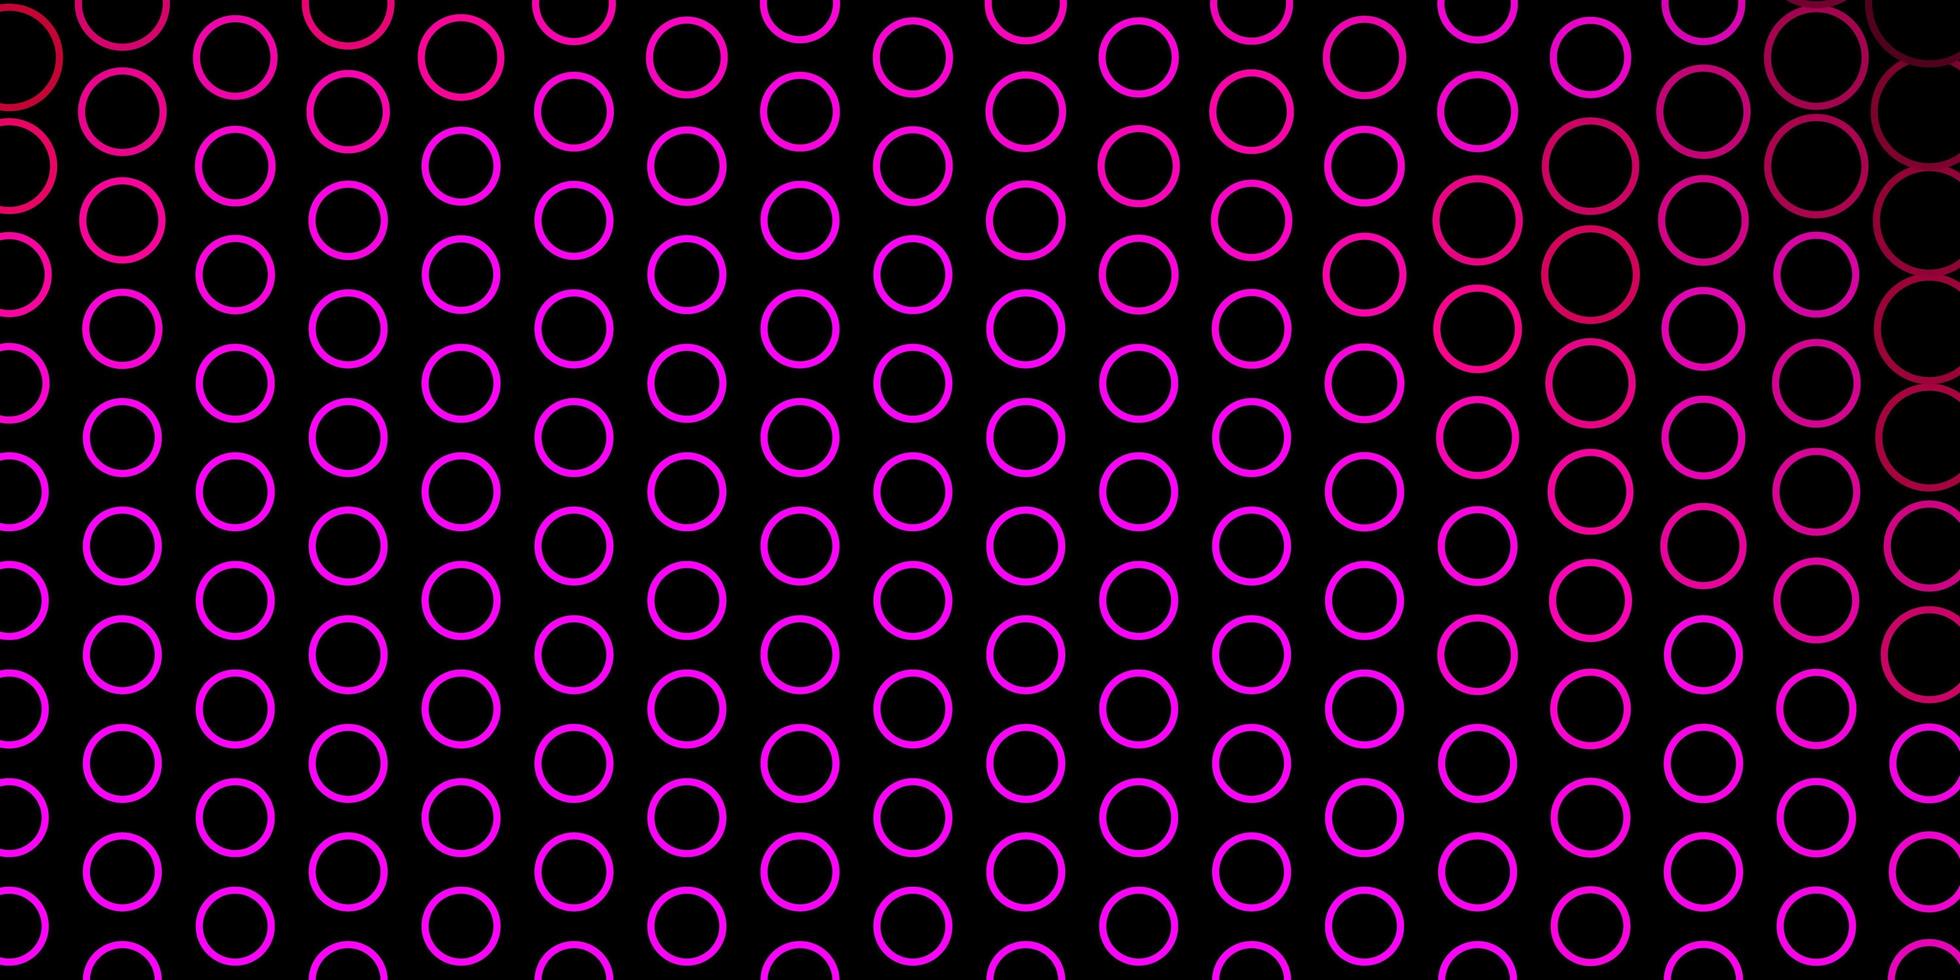 toile de fond vecteur rose foncé avec des cercles. illustration abstraite de paillettes avec des gouttes colorées. modèle pour les annonces commerciales.